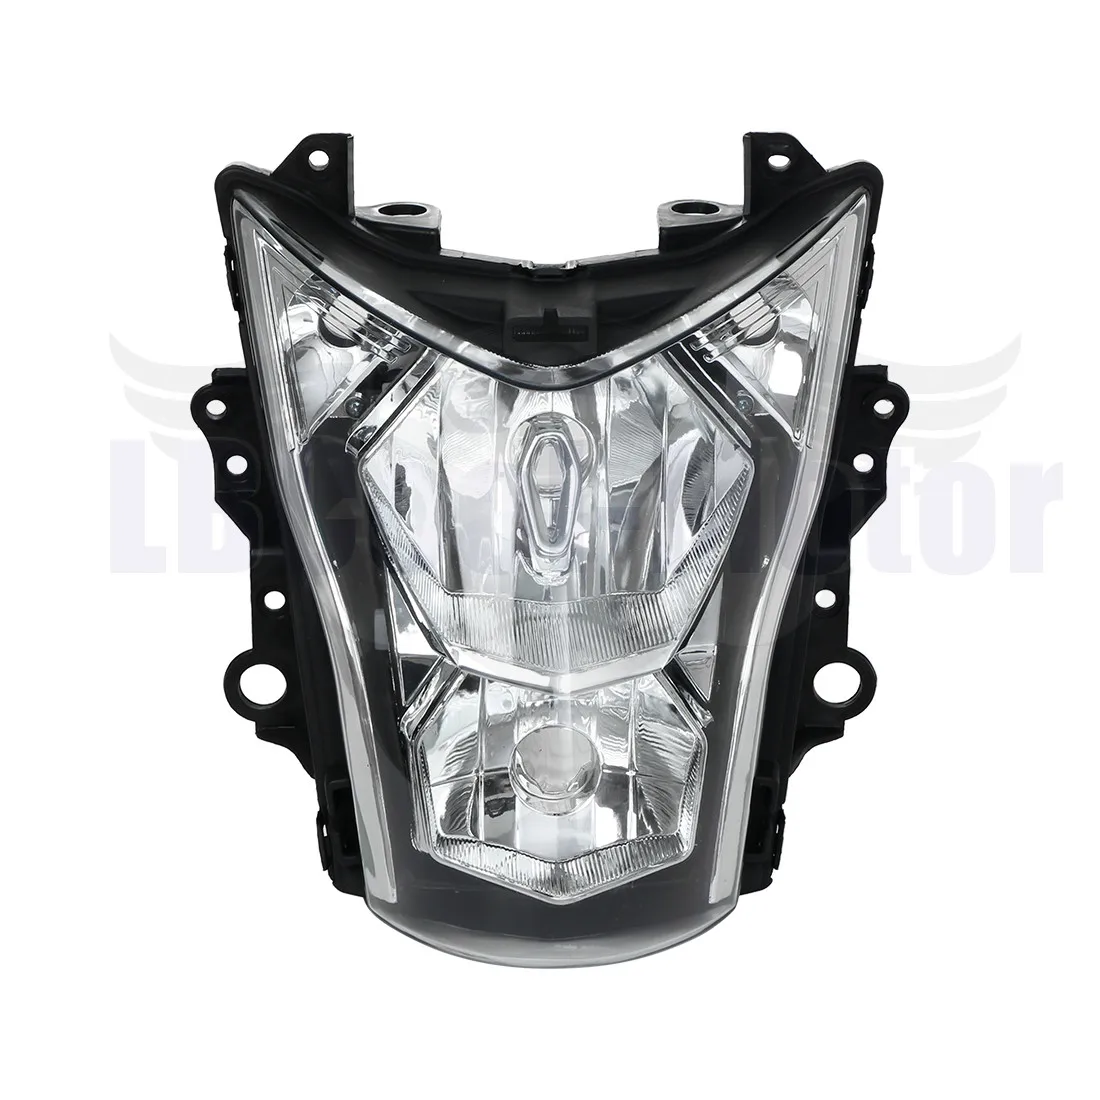 

Motorcycle Front Headlight Assembly Lamp For Kawasaki ER650 ER-6N 2012-2016 2013 2014 2015 OEM 23007-0195 Head Light Headlamp